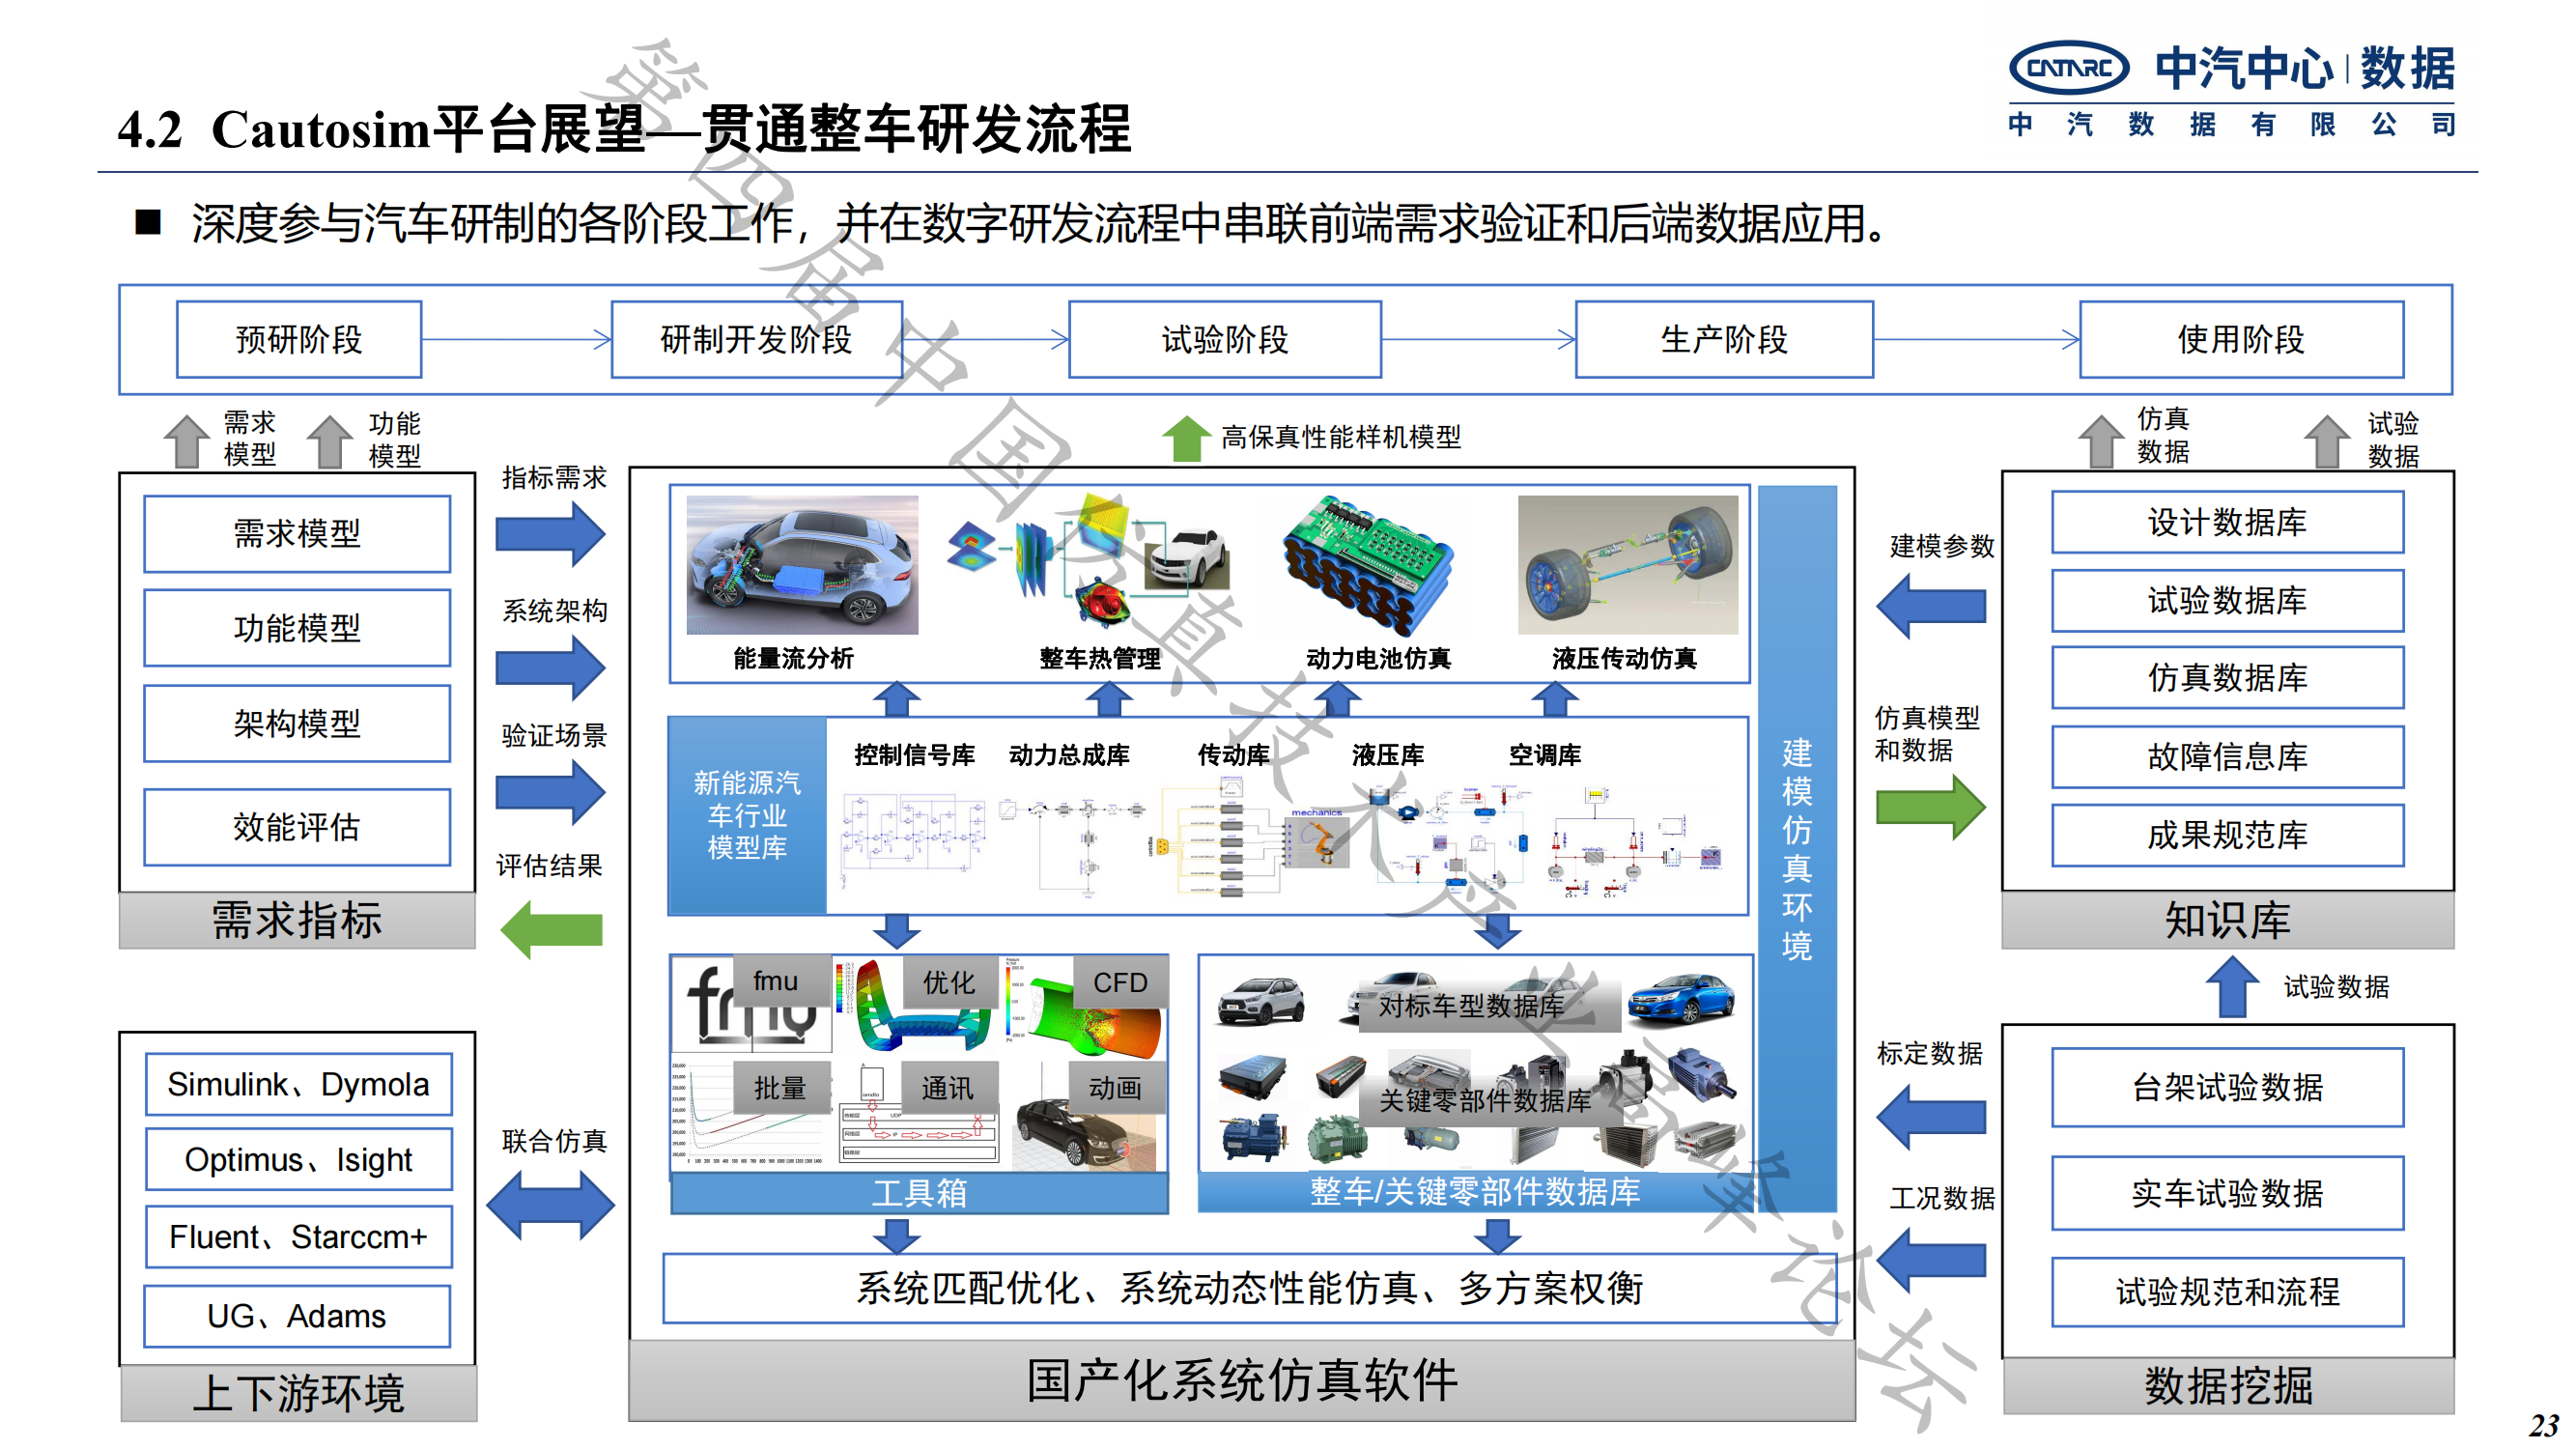 何绍清-国产系统仿真工具在新能源整车研发的应用实践-中汽数据(1)_22.png